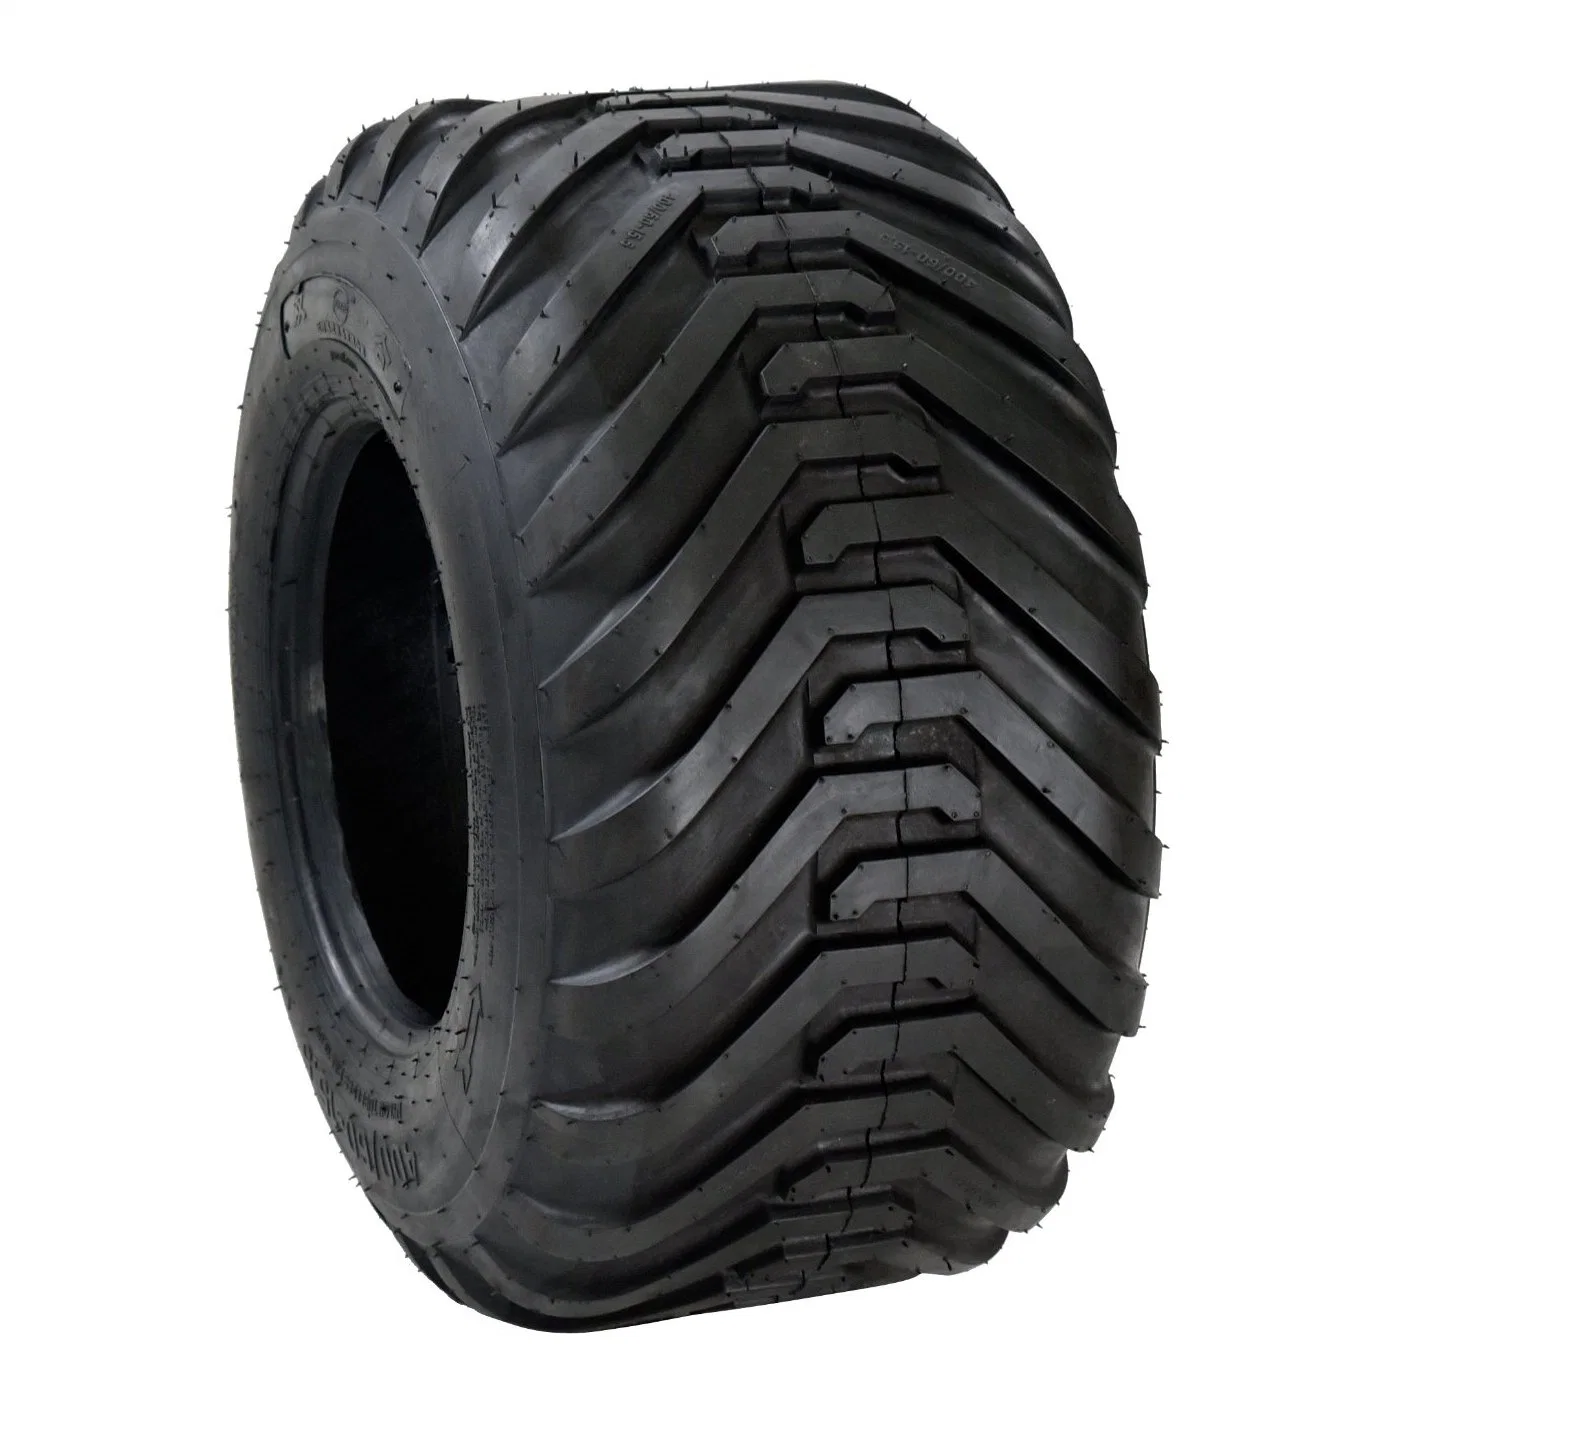 Size 10/75-15.3 I-3c Pattern Wholesaler Agricultural Tire Used for Baler